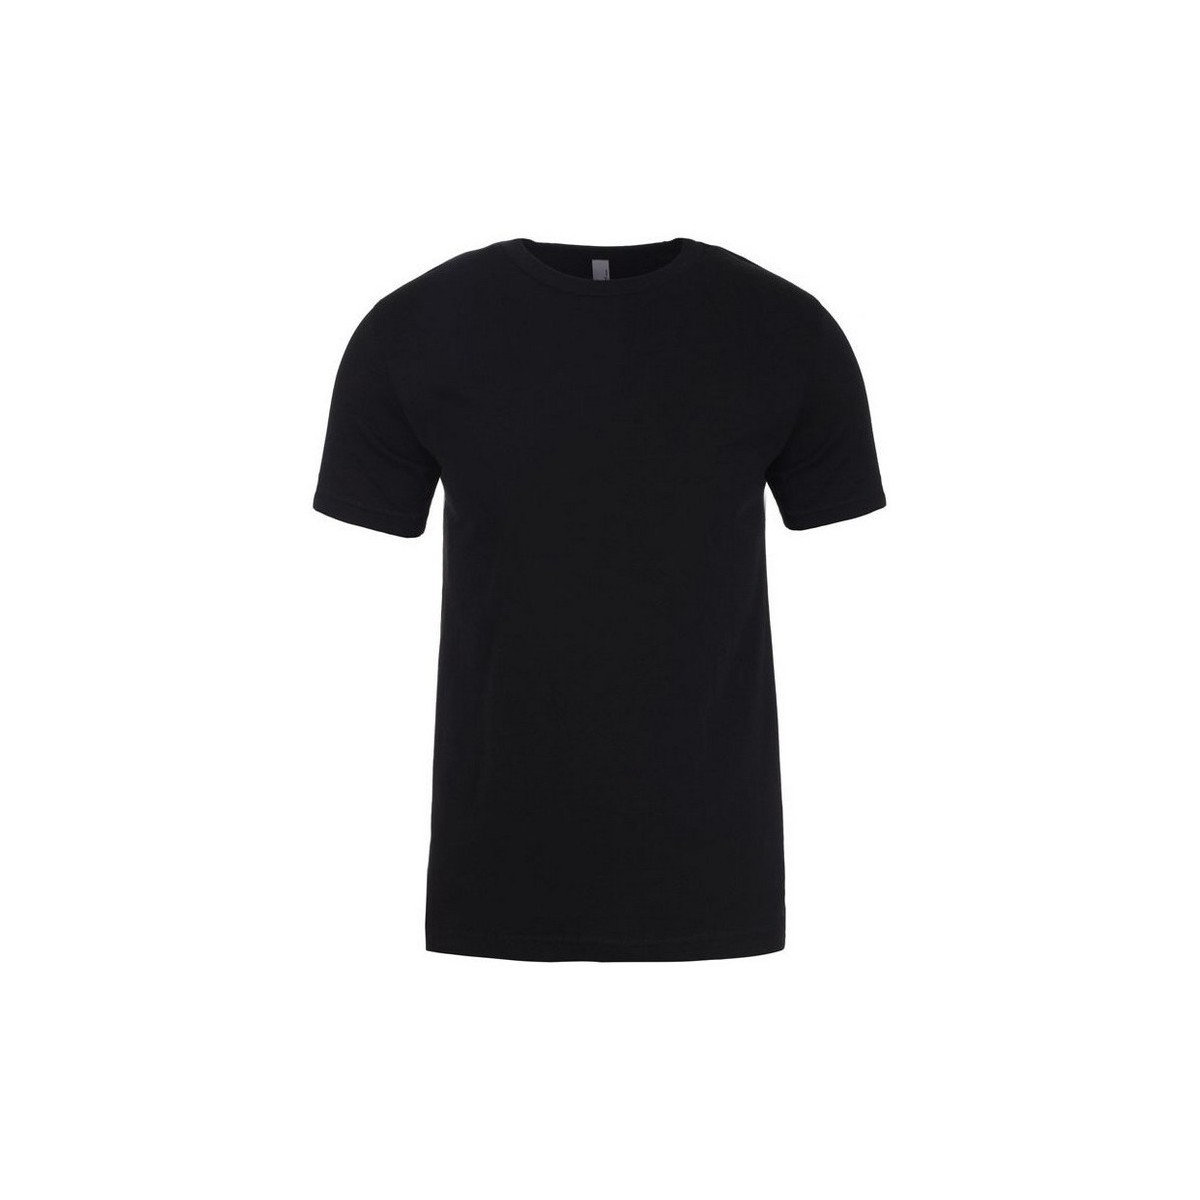 Abbigliamento T-shirts a maniche lunghe Next Level NX3600 Nero